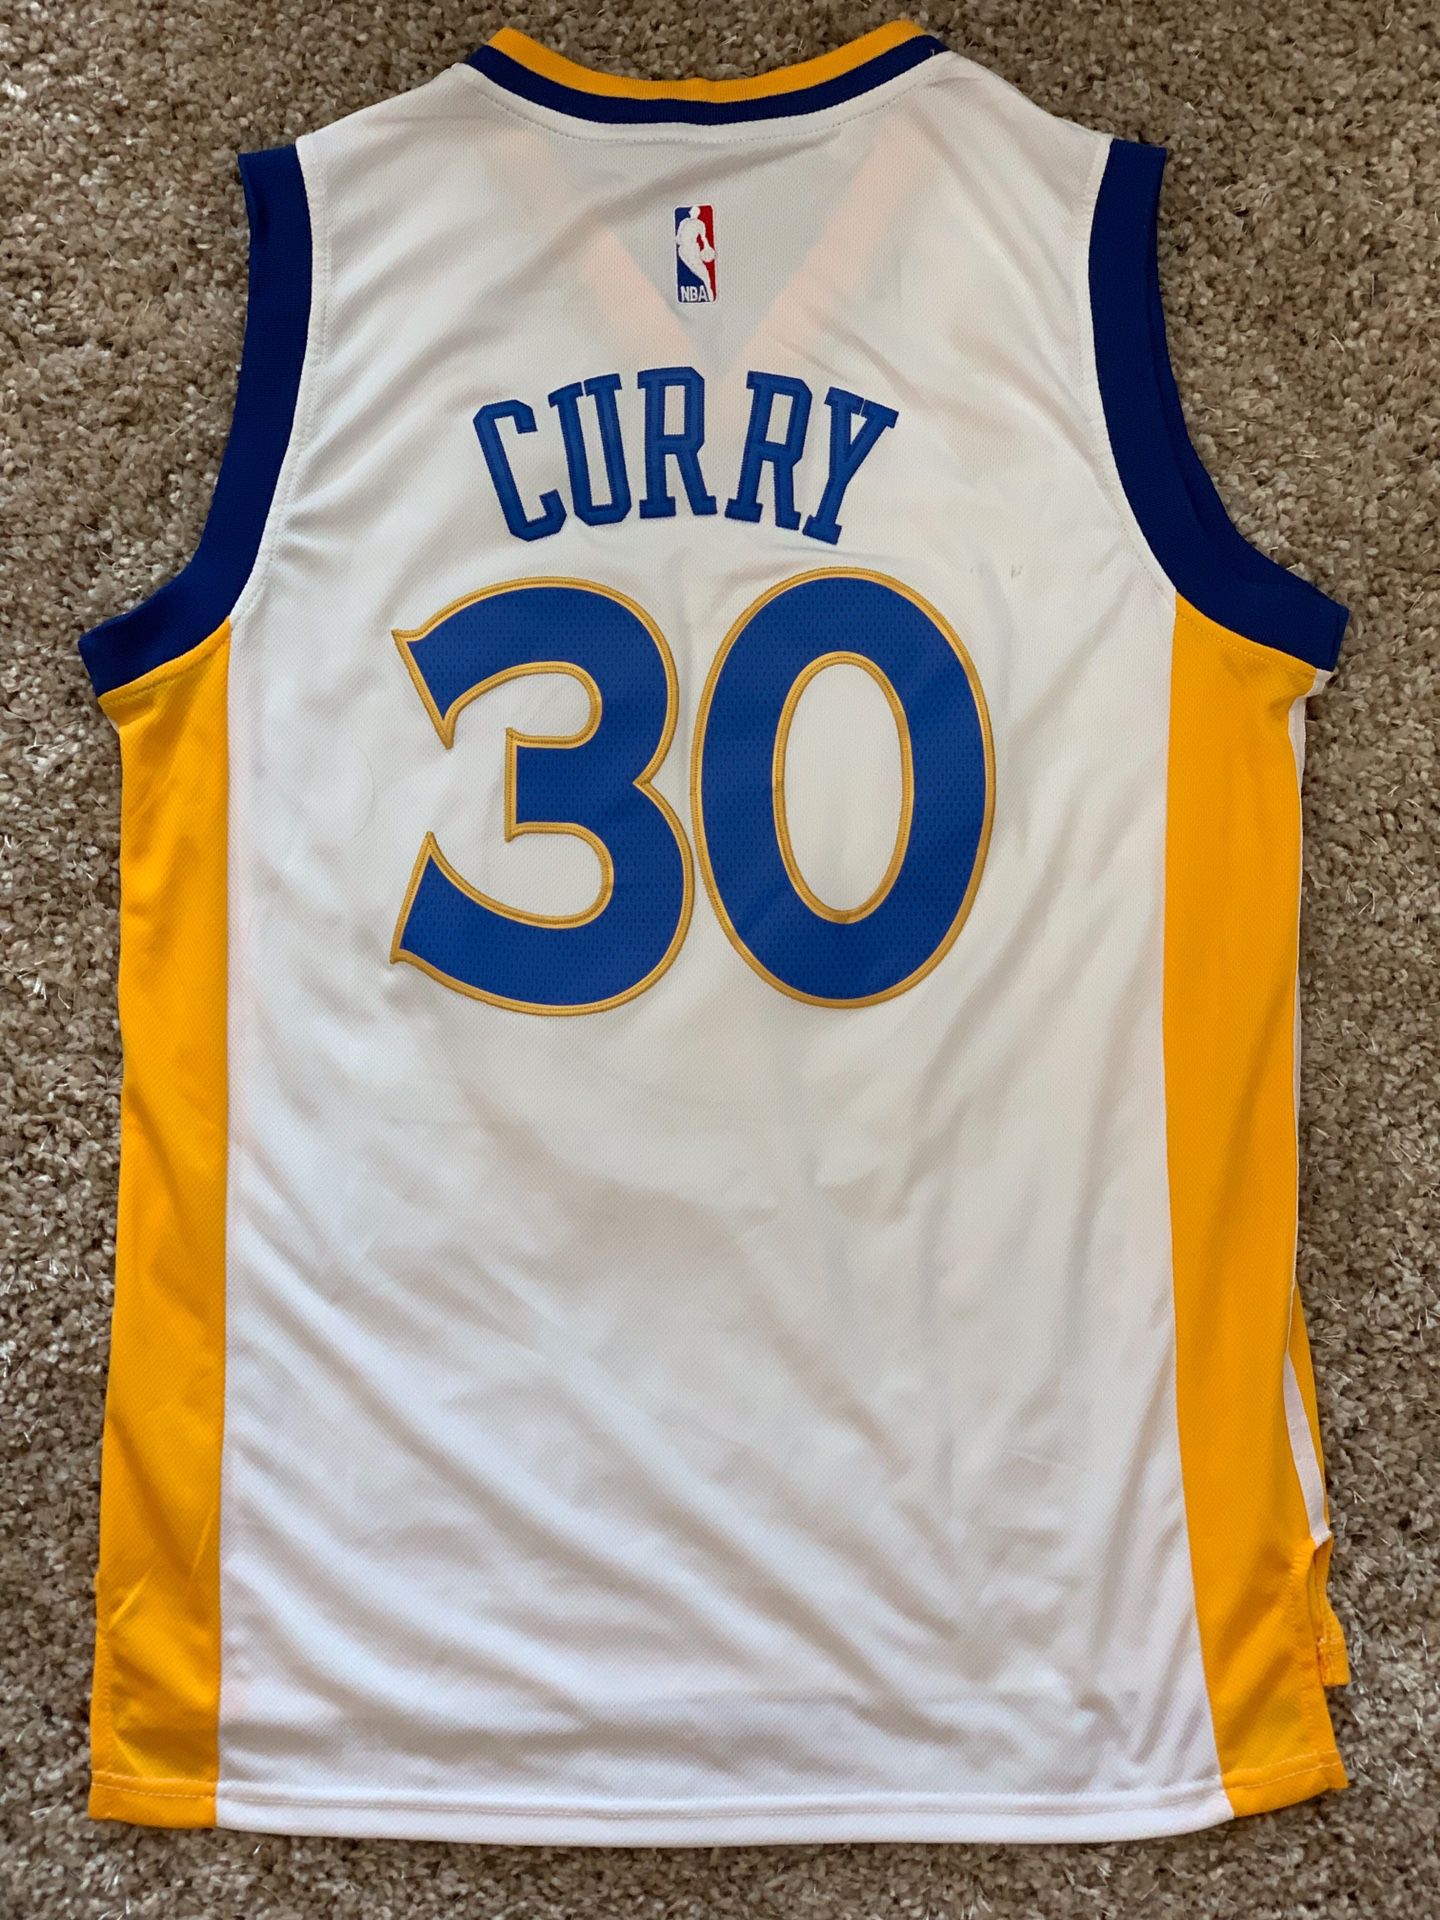 Stephen Curry, Warriors Basketball Jersey